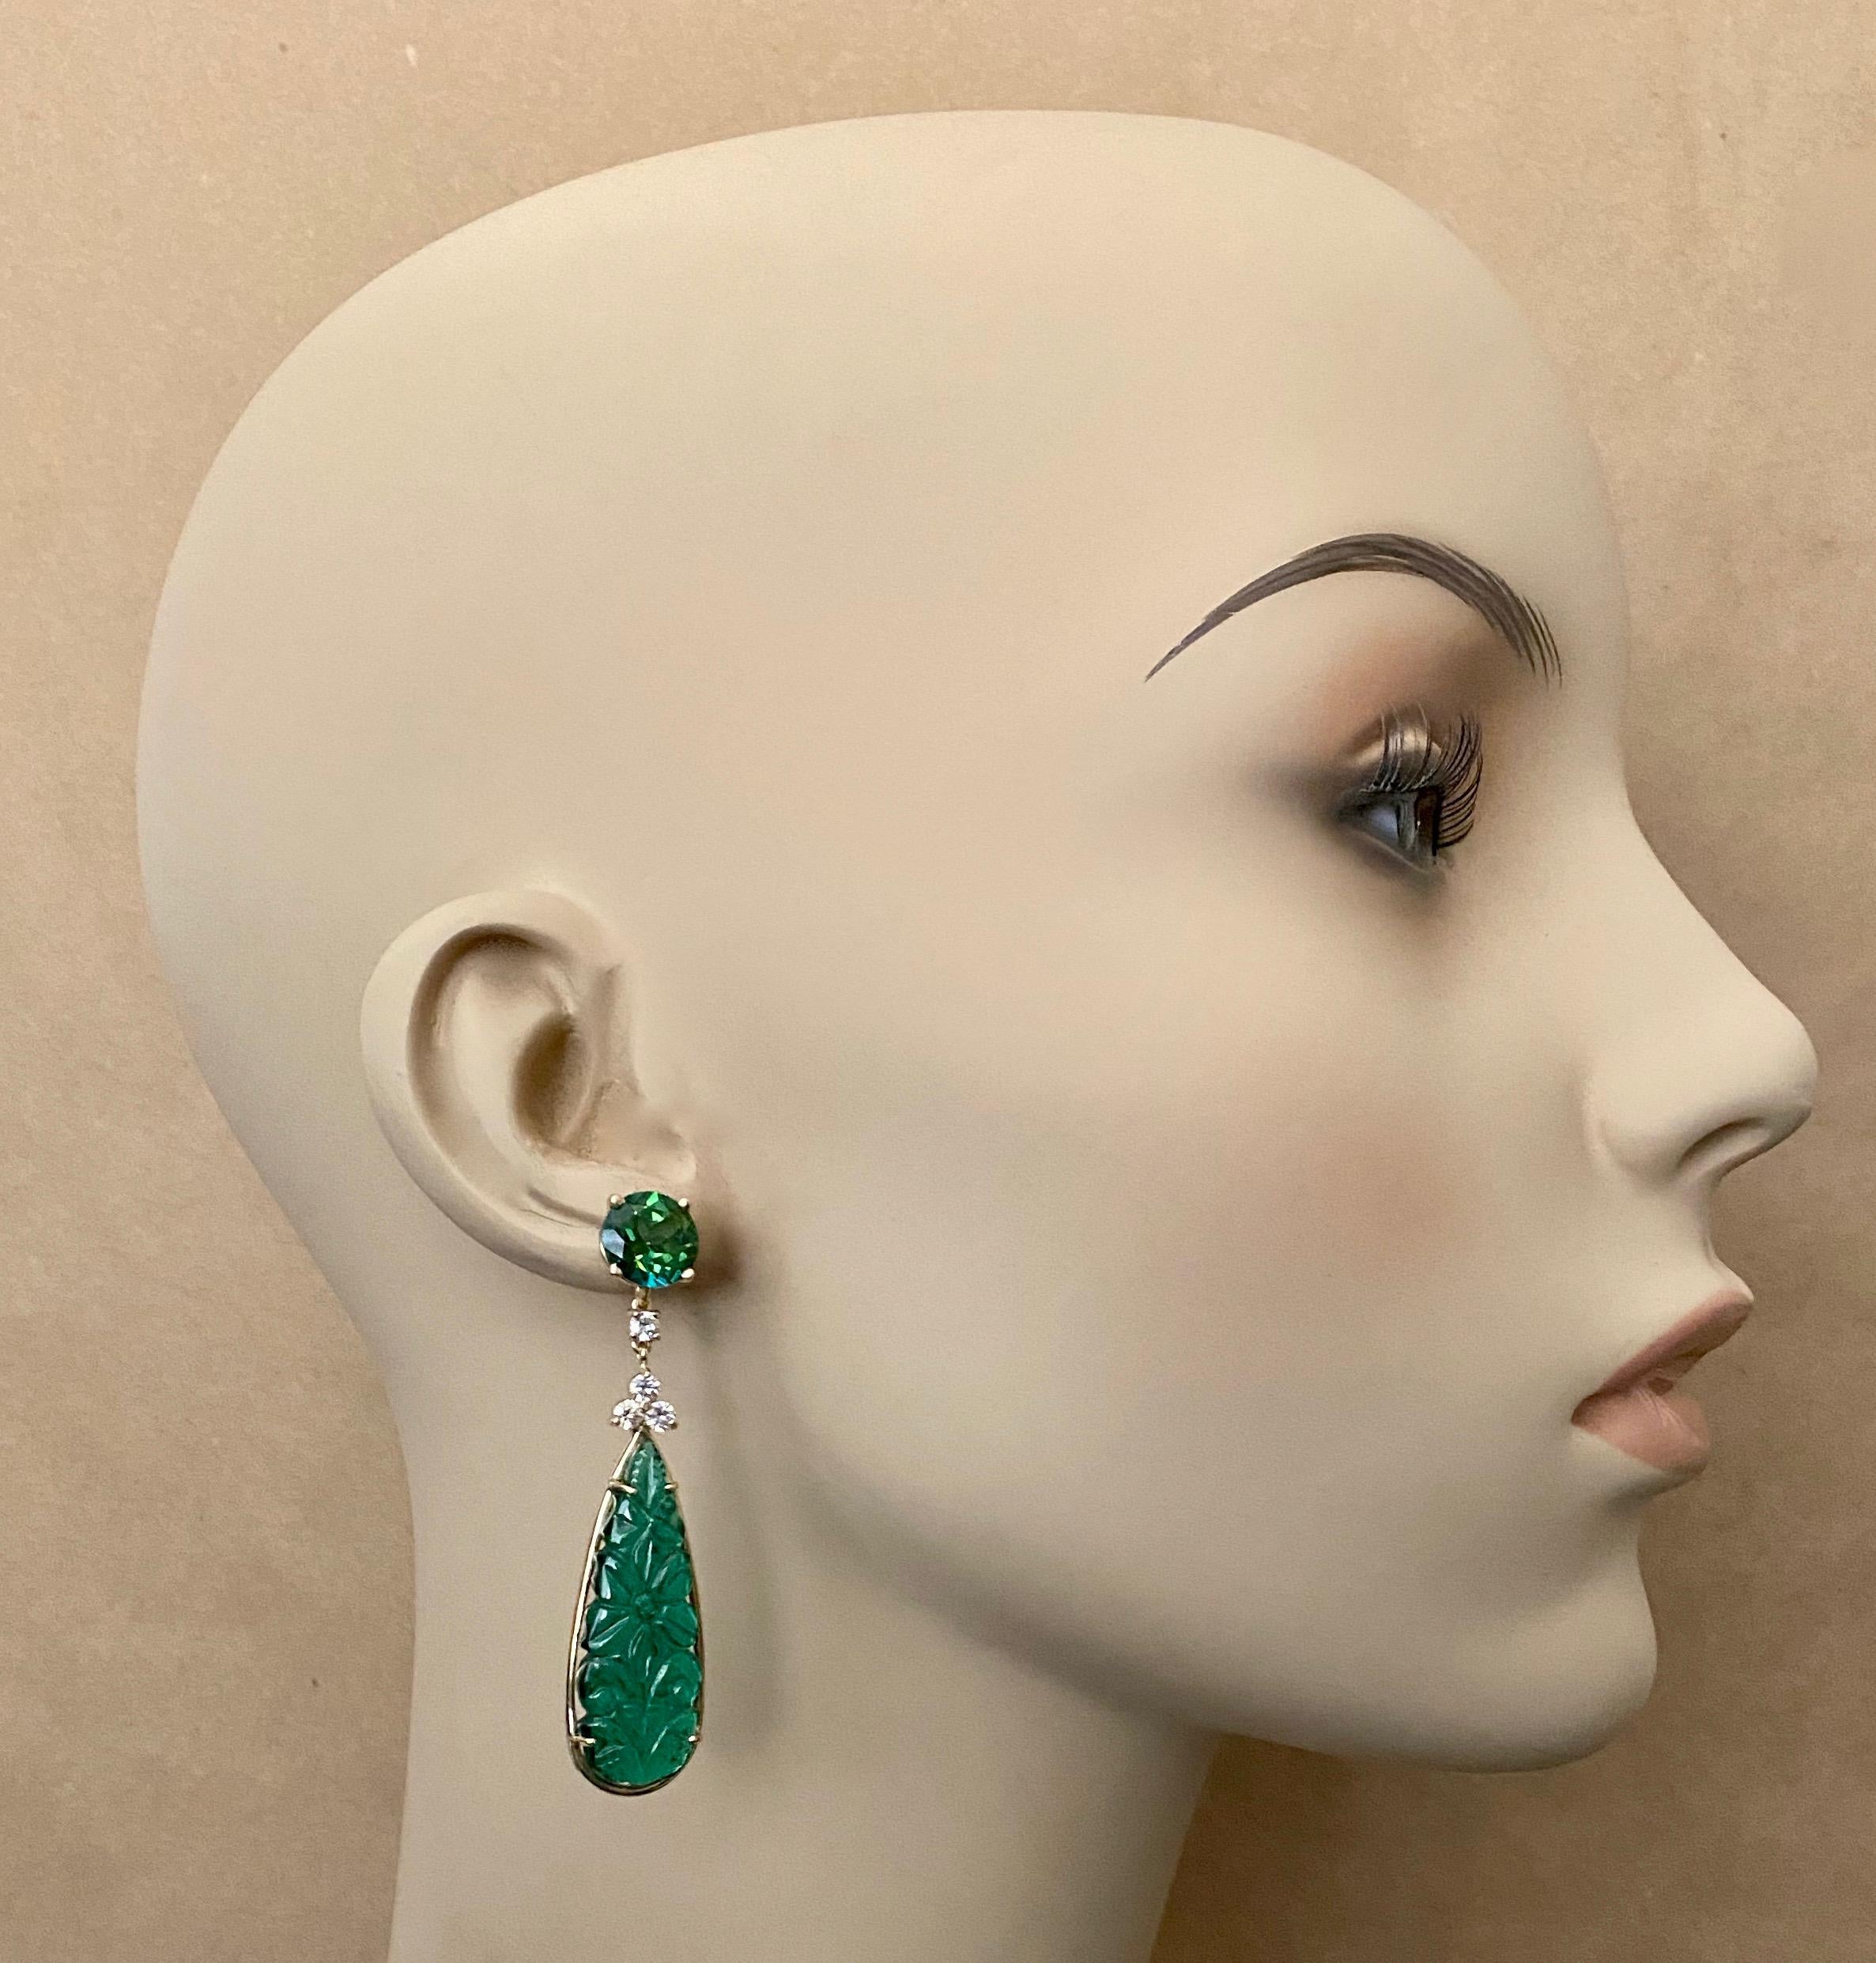 Ces élégantes boucles d'oreilles pendantes sont ornées de gouttes d'onyx vert.  L'onyx (origine : Pérou) est translucide, d'un vert brillant et finement sculpté d'un motif floral dans le style indien.  Les gouttes sont complétées par des topazes